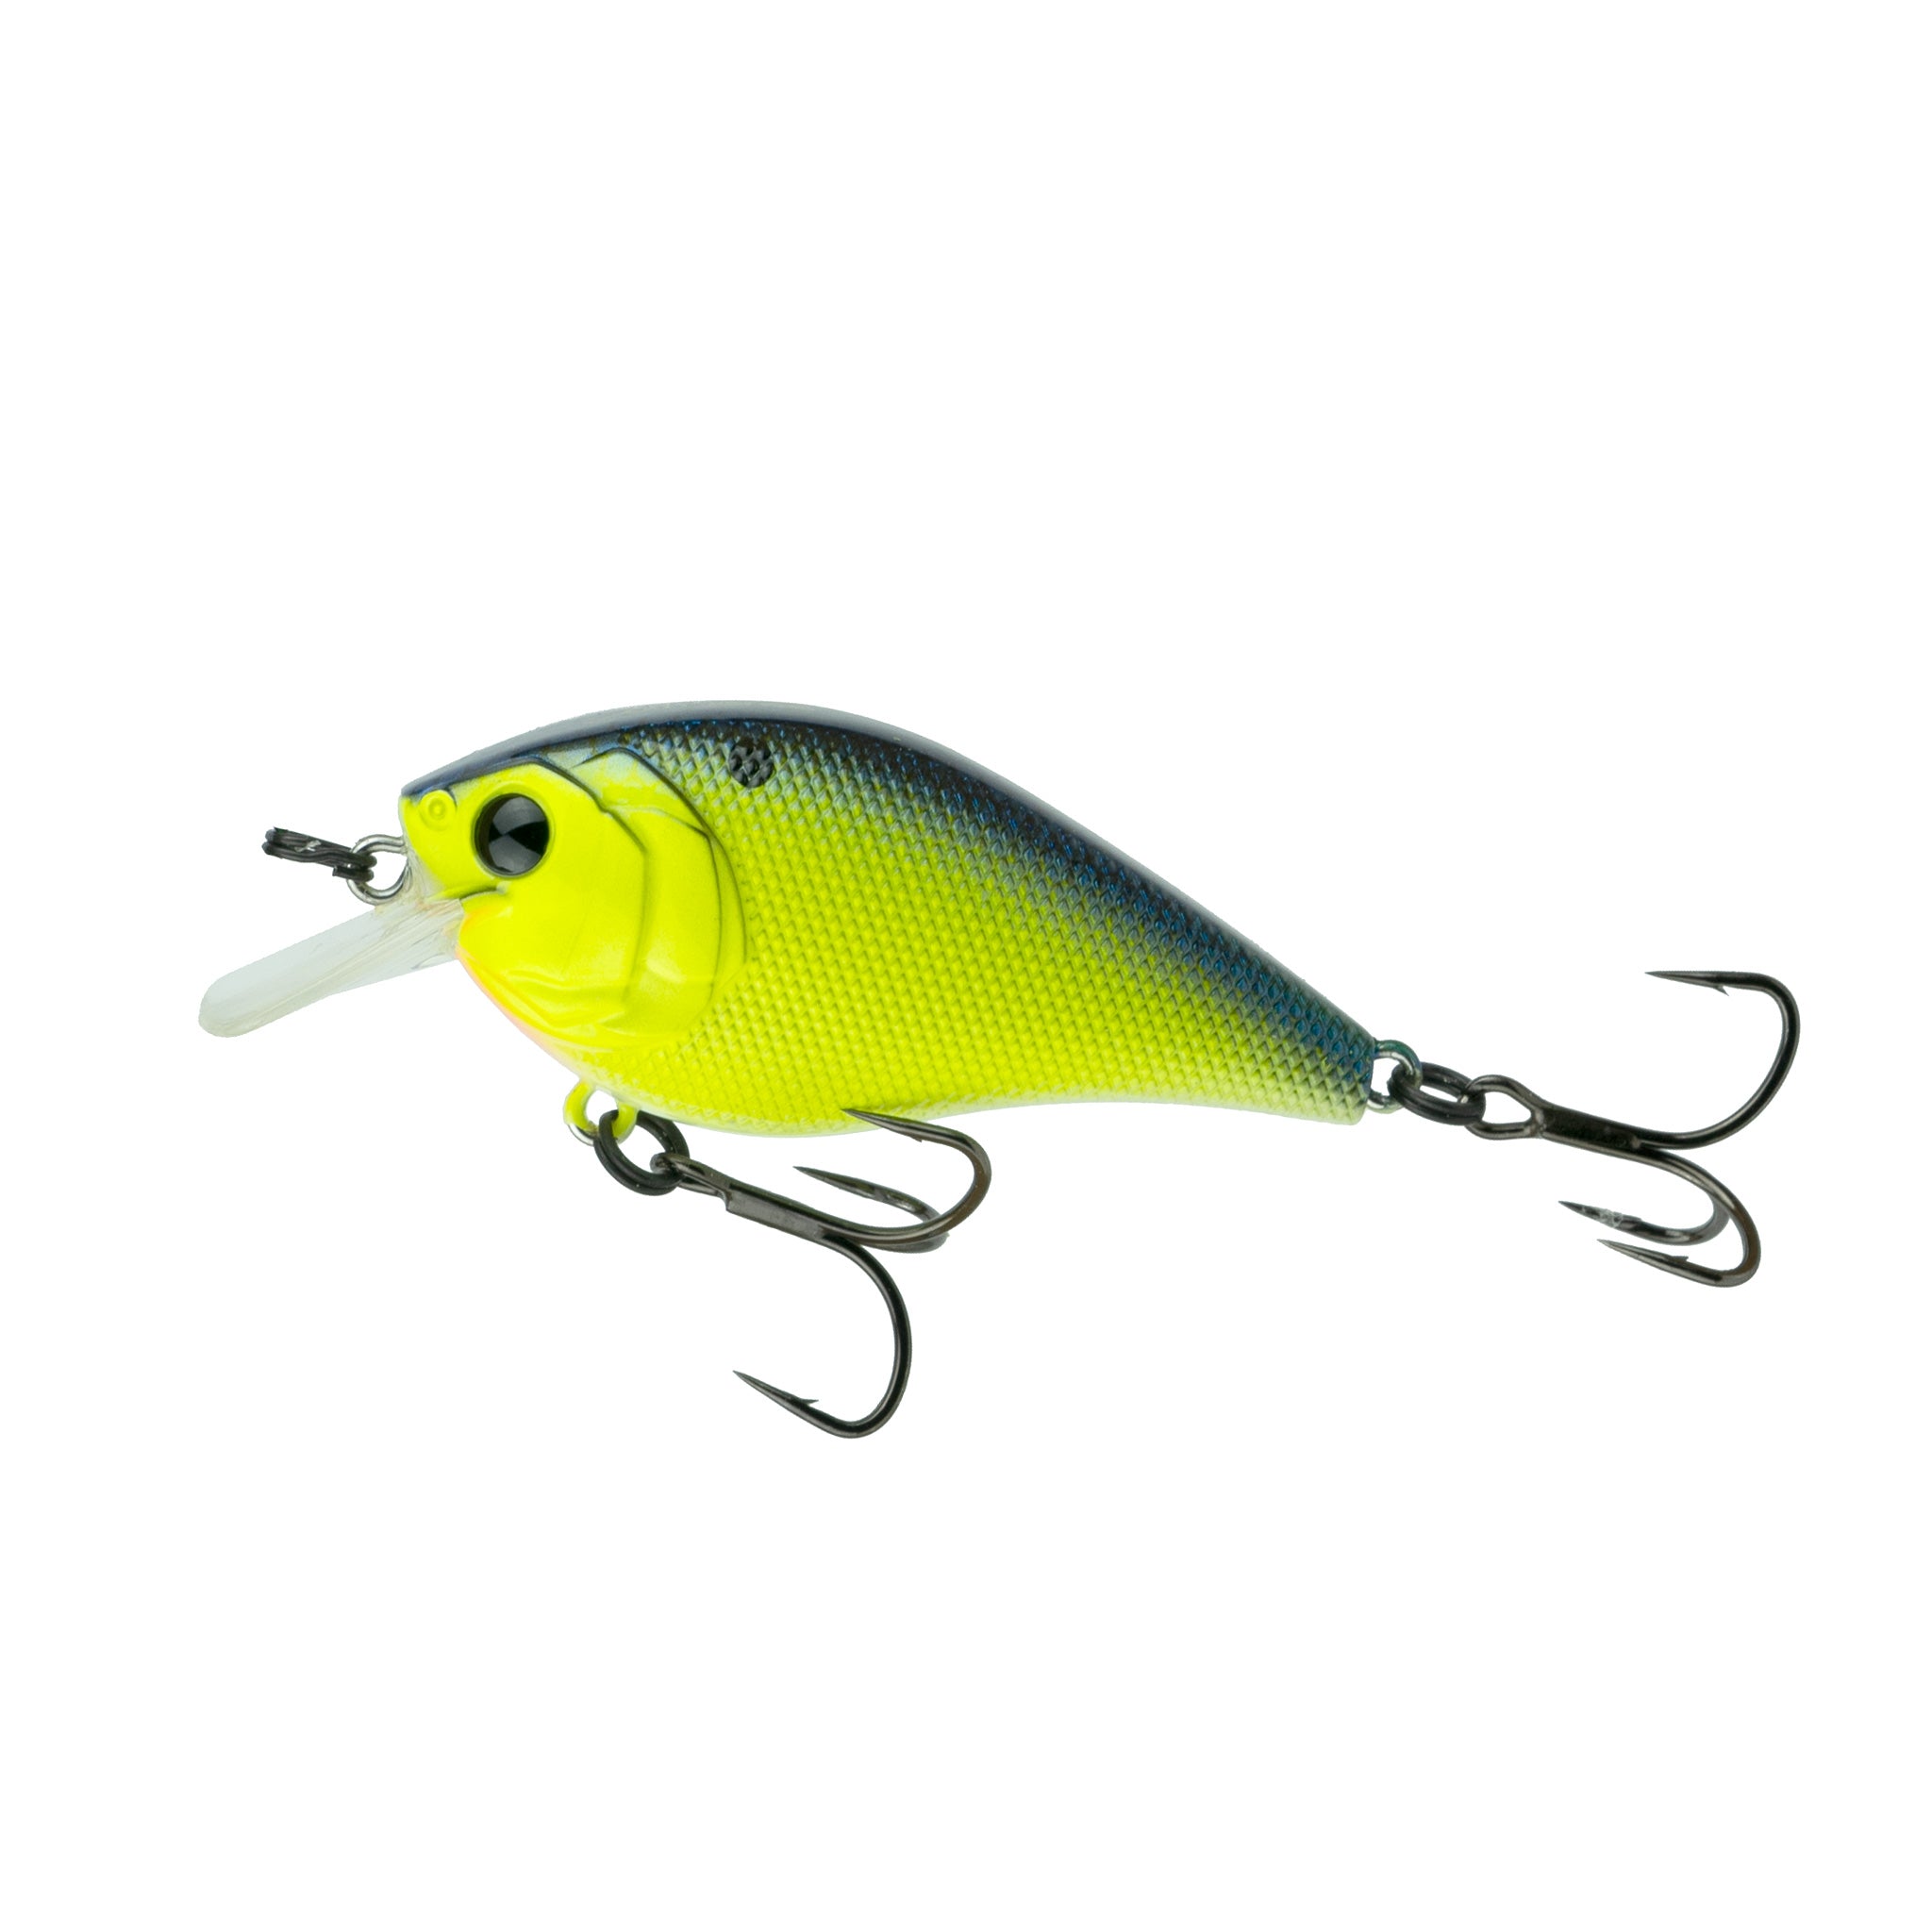 6th Sense Fishing - Crush Series Squarebill Crankbait - Chartreuse Pro Blue 50s (Silent)